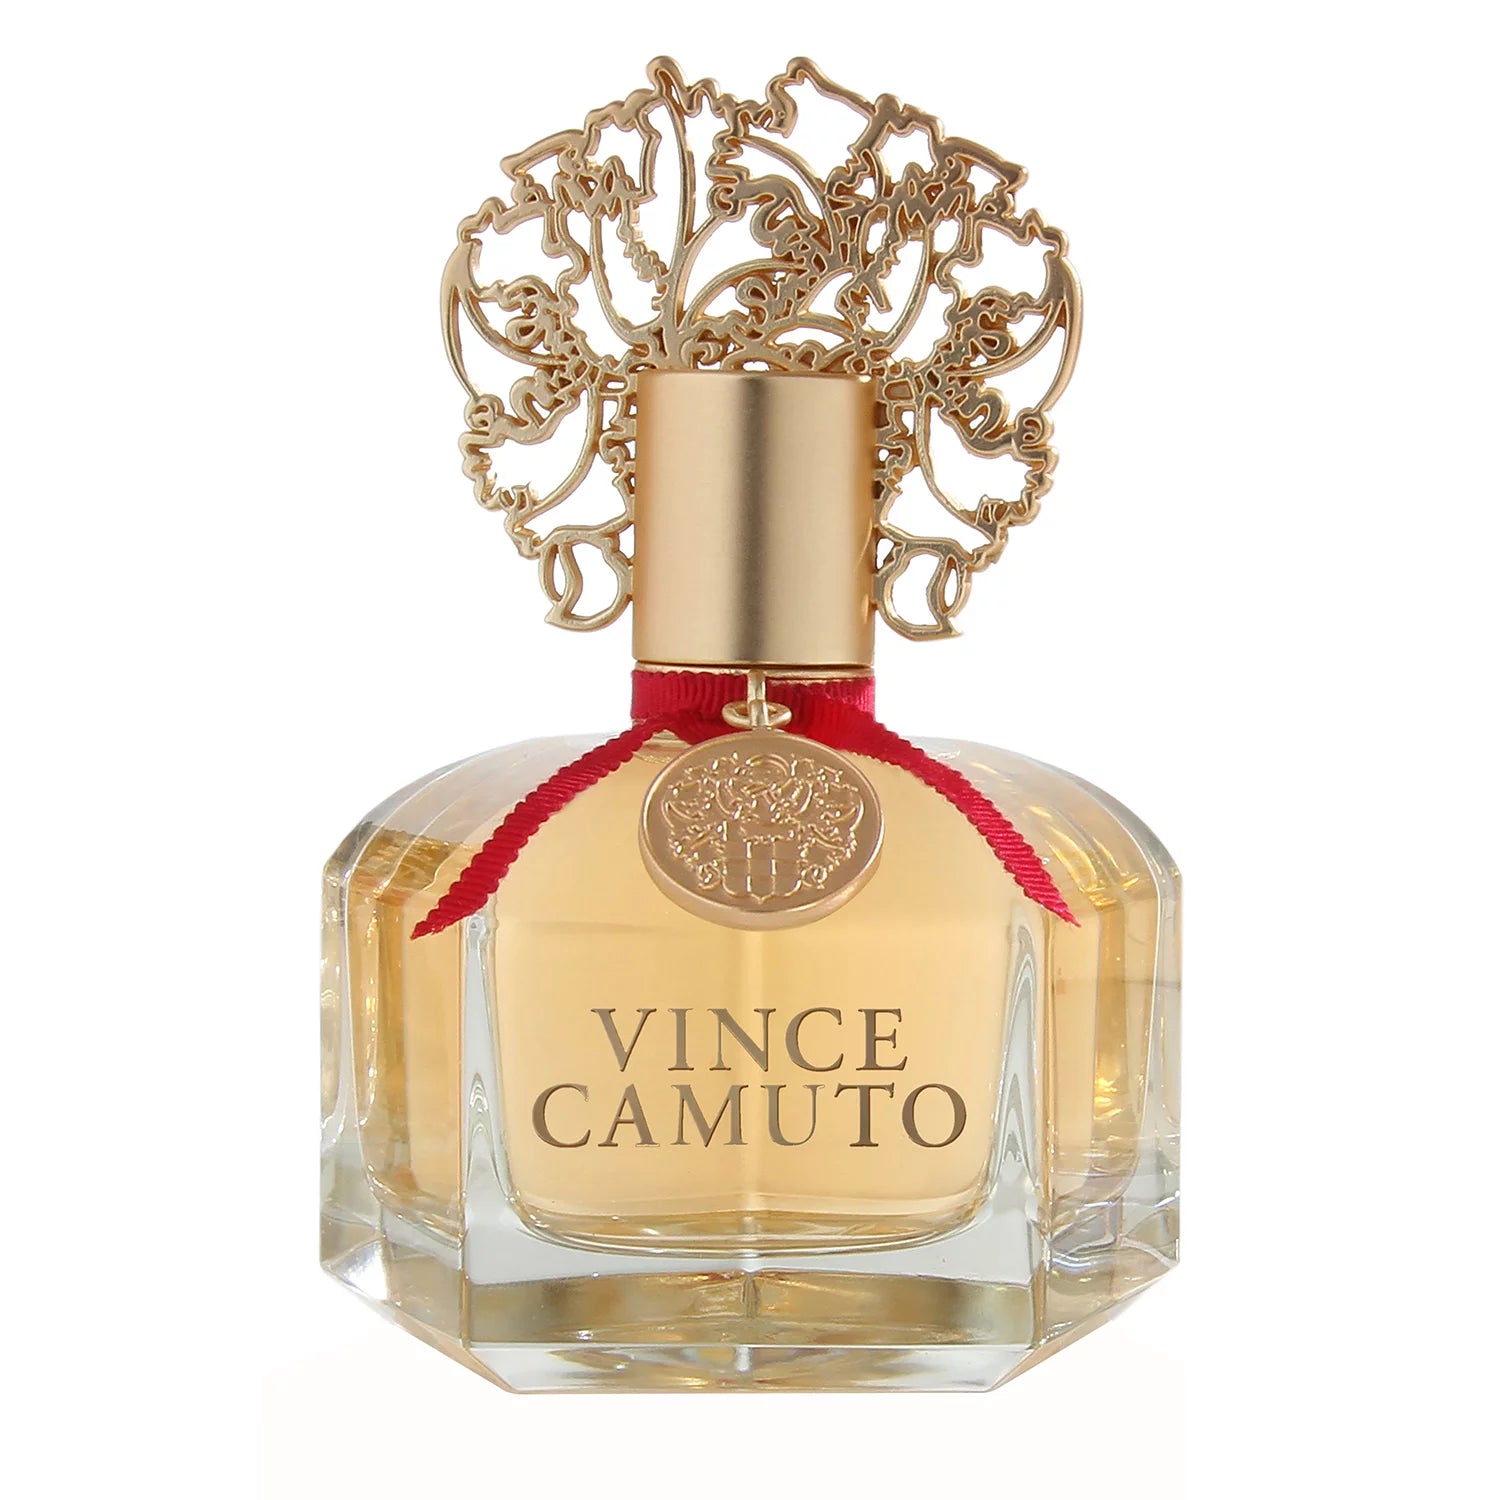 Vince Camuto Amore Women's Perfume/Cologne For Women Eau de Parfum